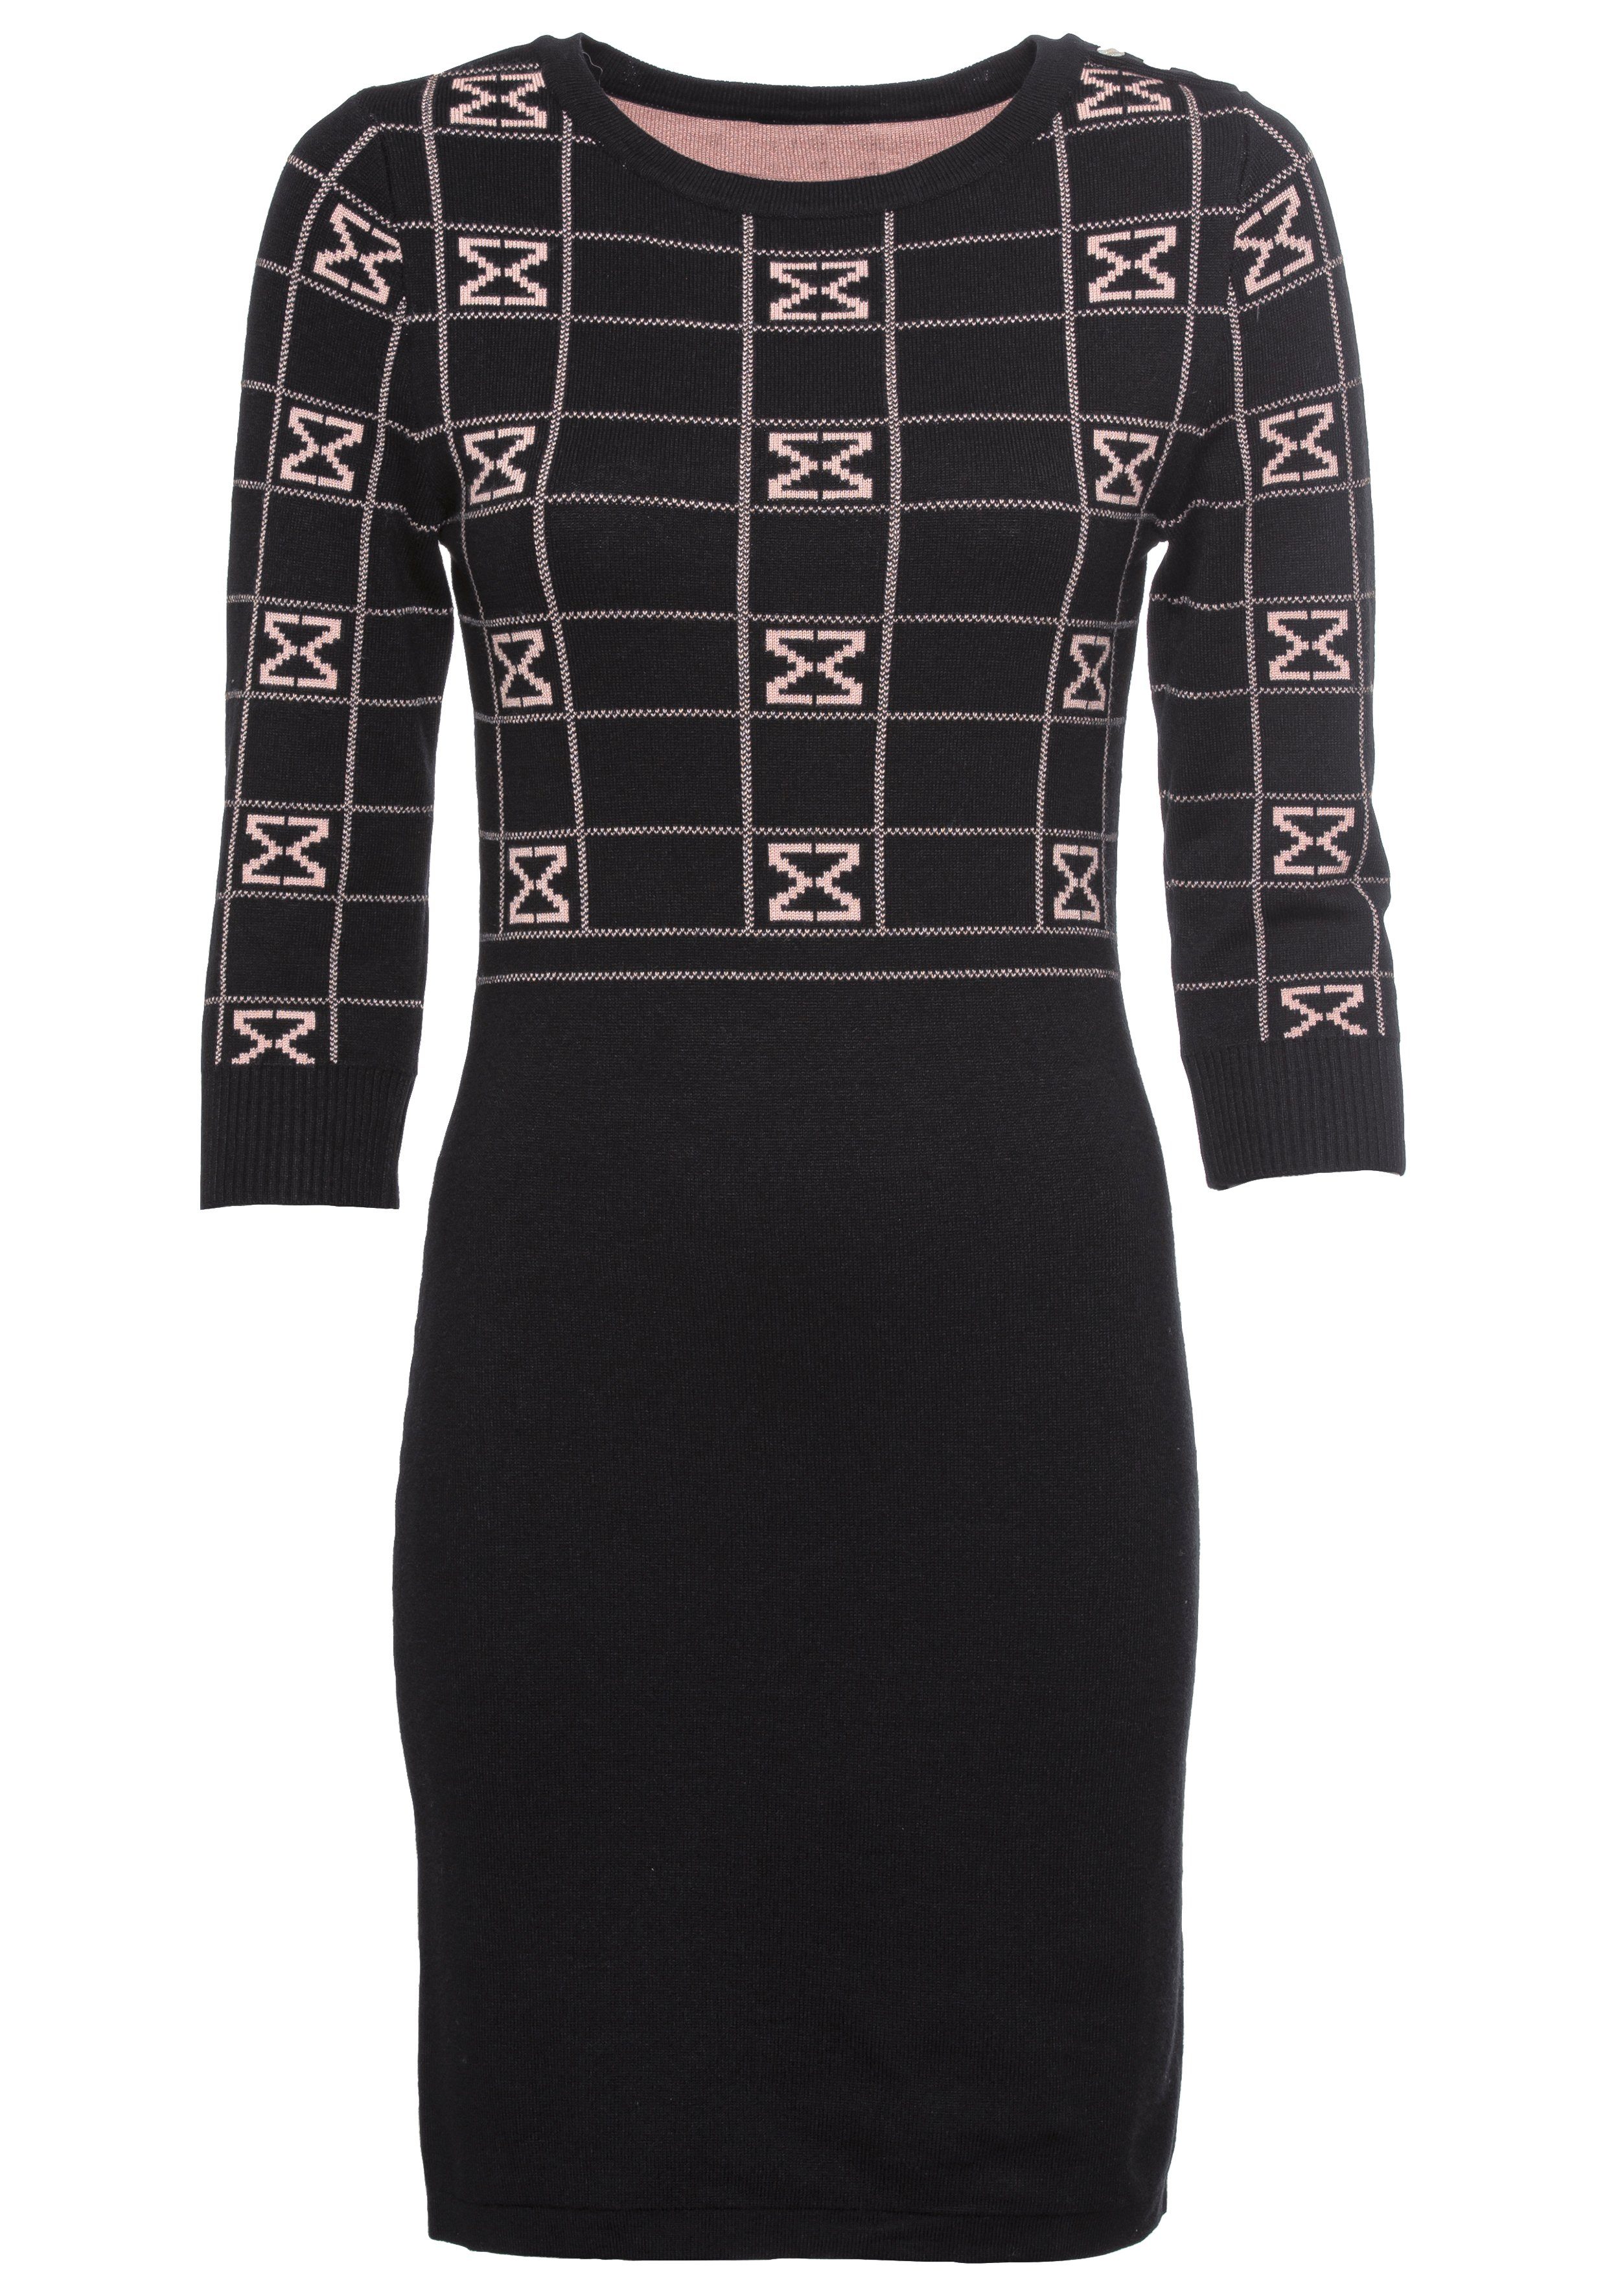 Melrose Gebreide jurk met modern jacquard patroon nieuwe collectie